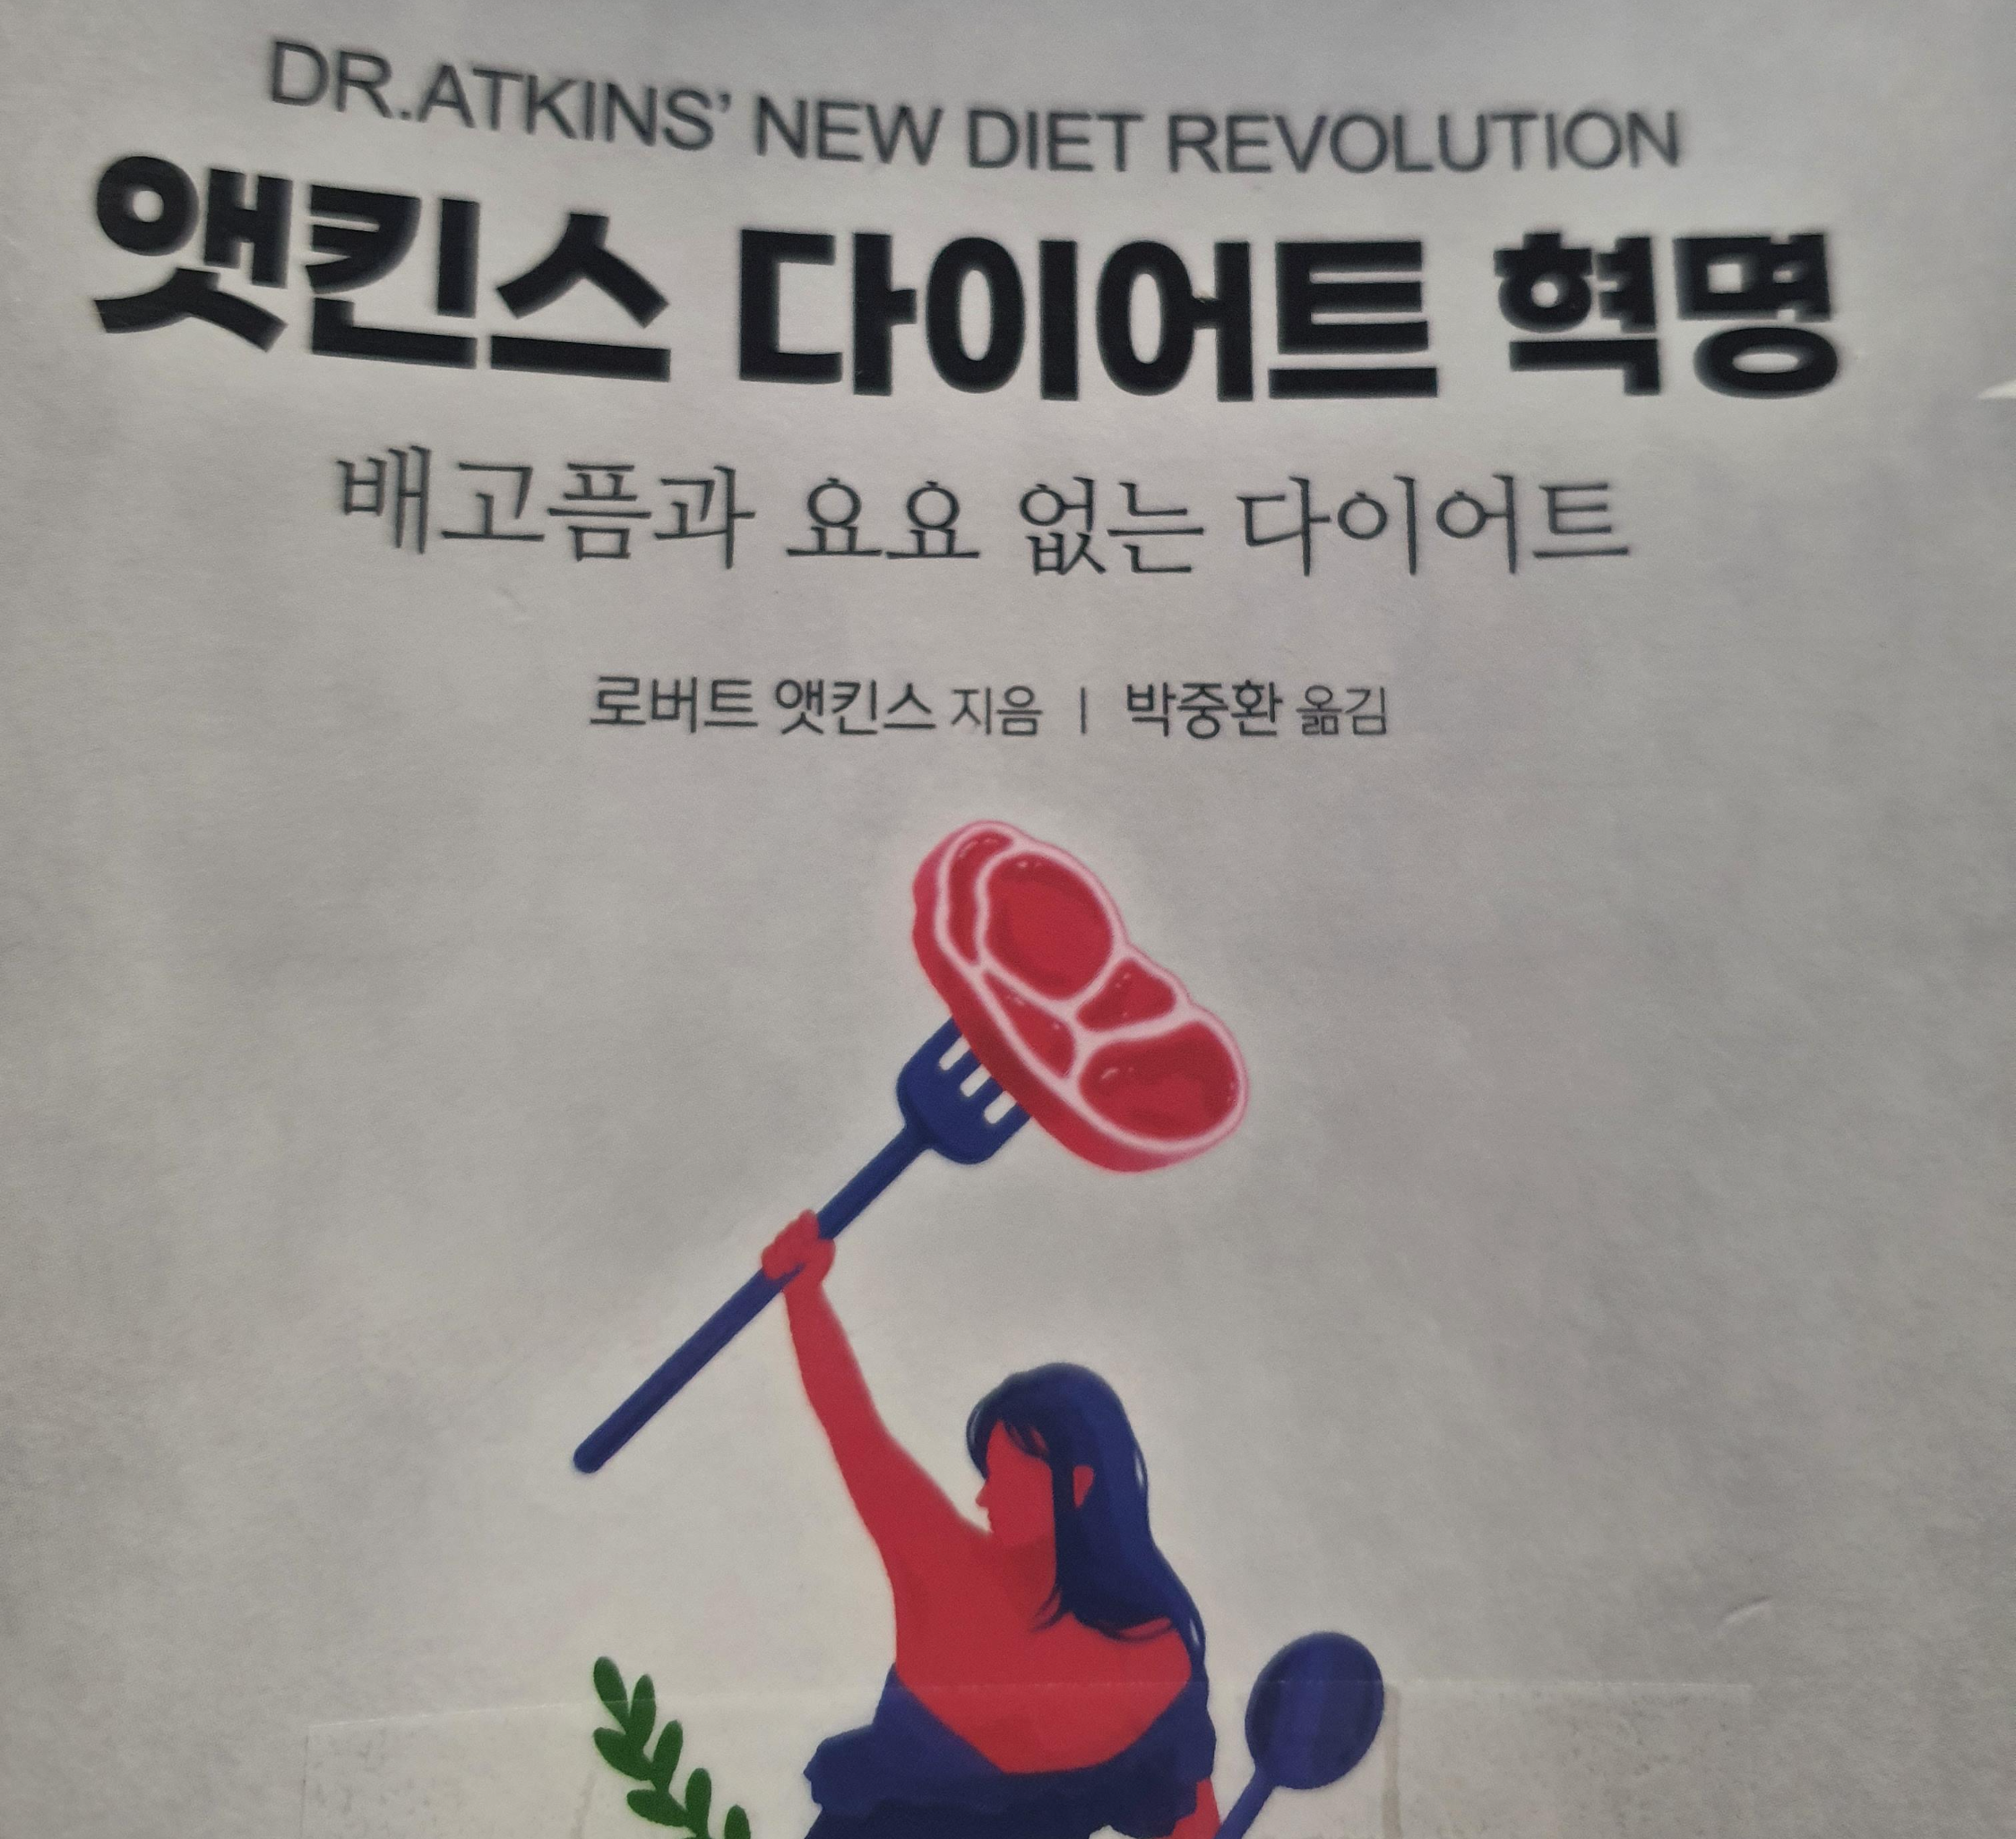 저탄고지 앳킨스 다이어트 혁명